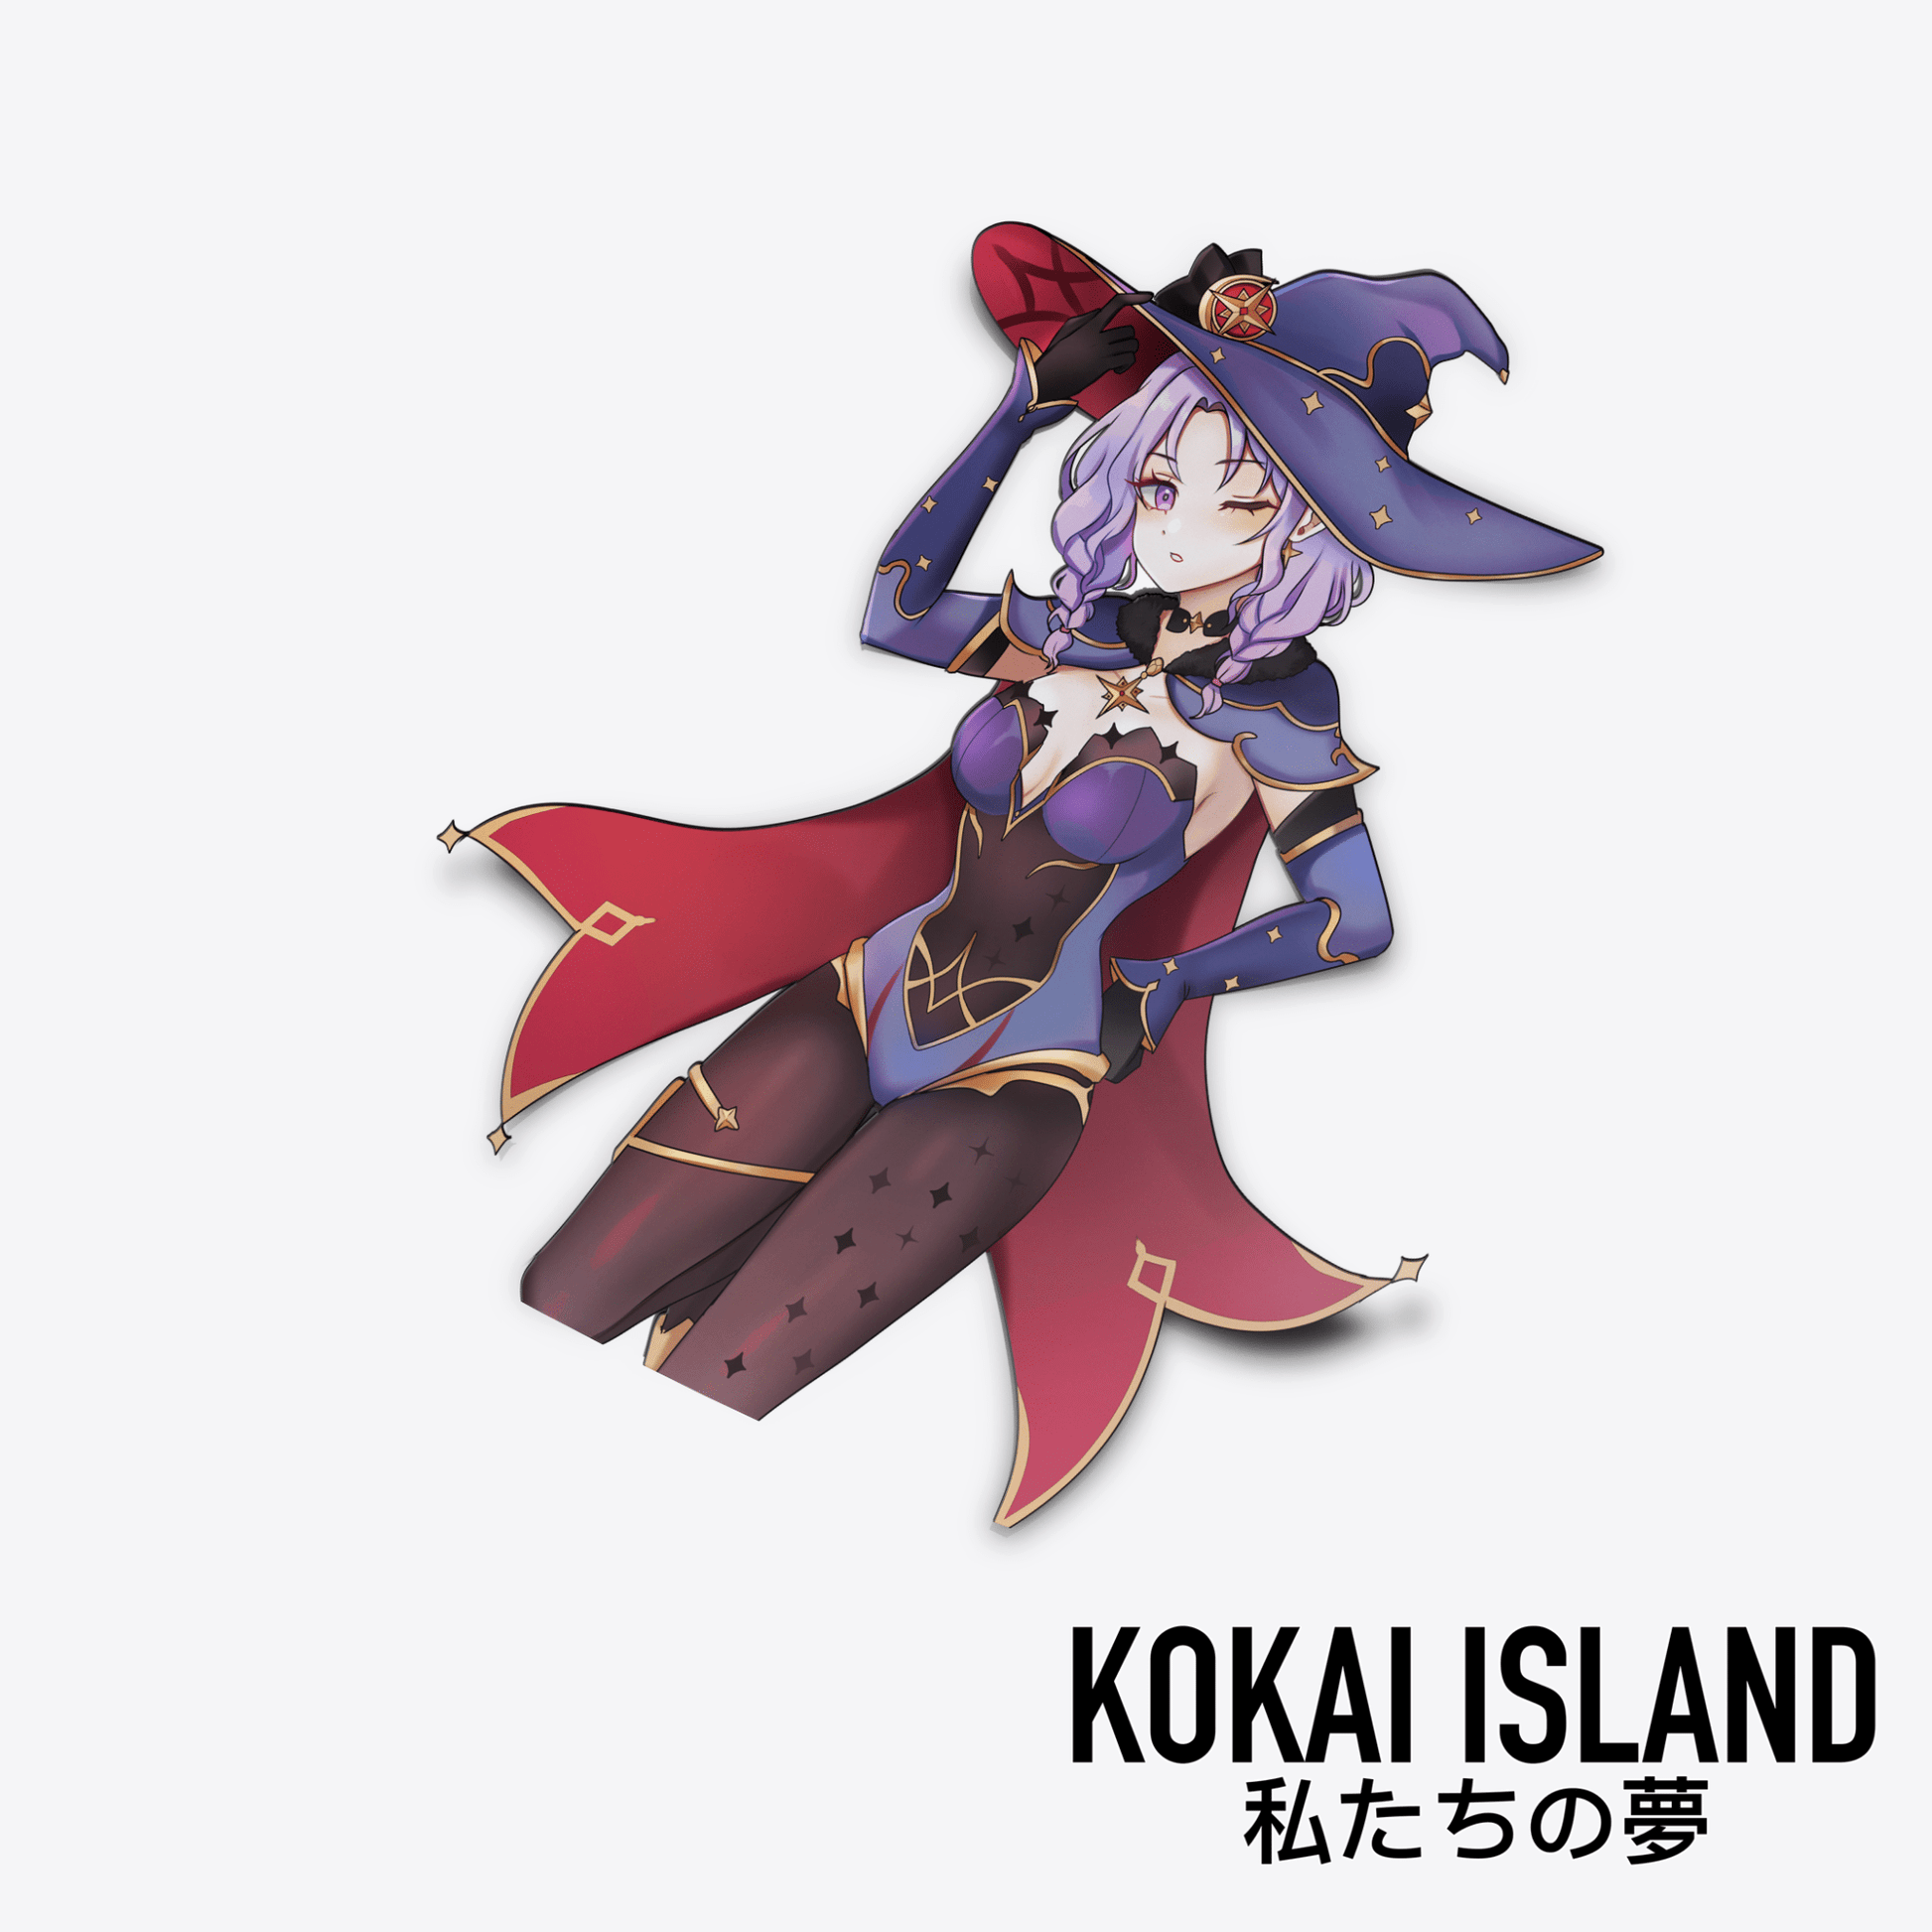 Koko-Mona Cosplay DecalDecalKokai Island